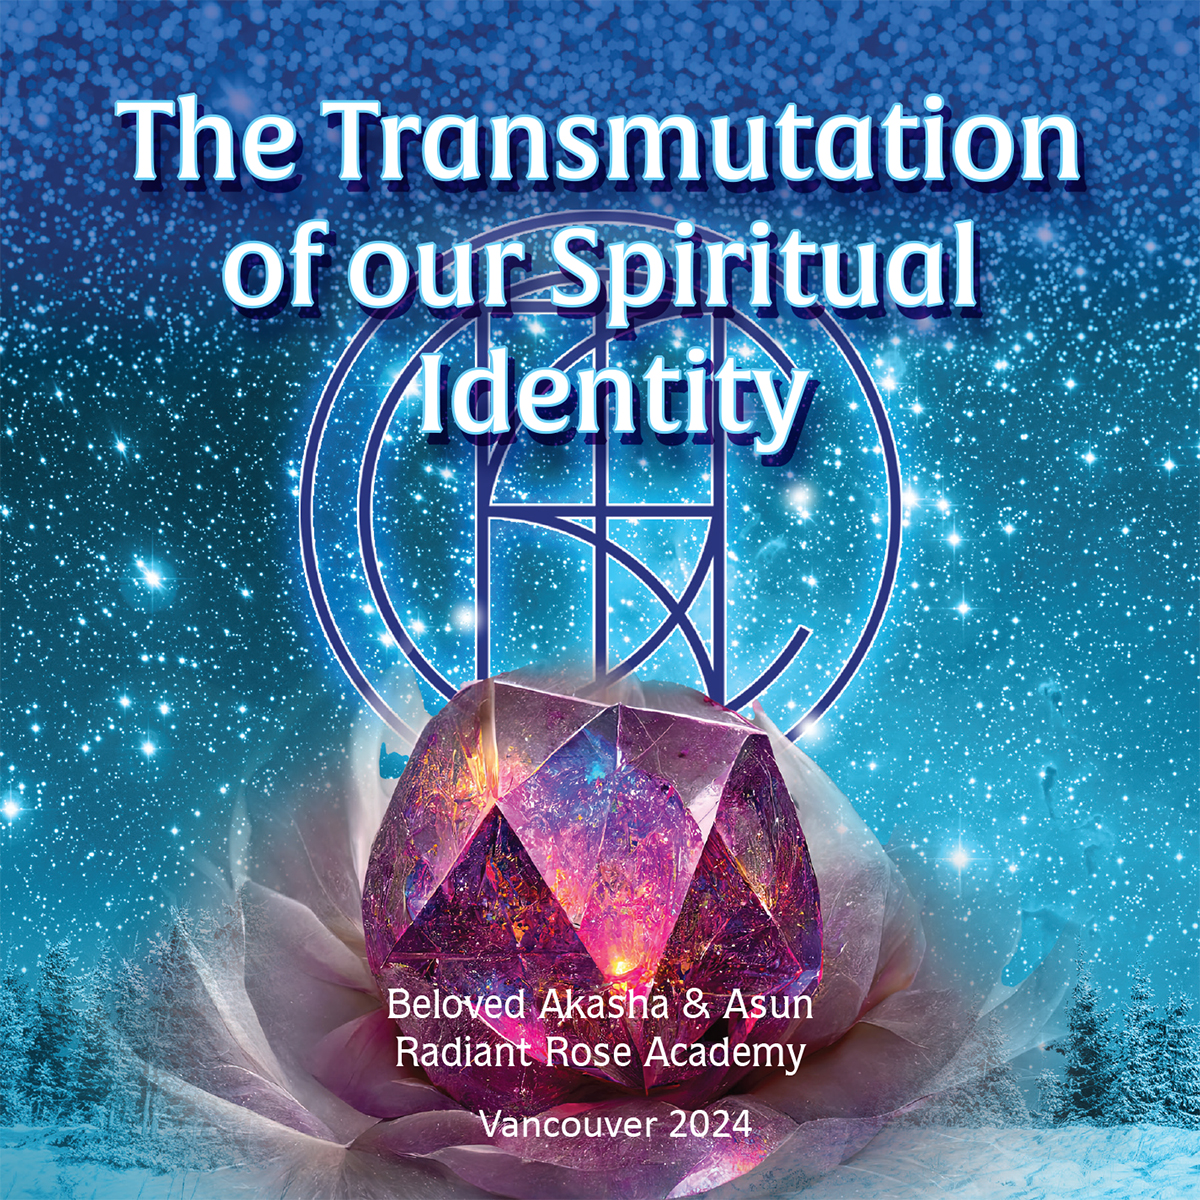 Transmutation of our Spiritual Identity